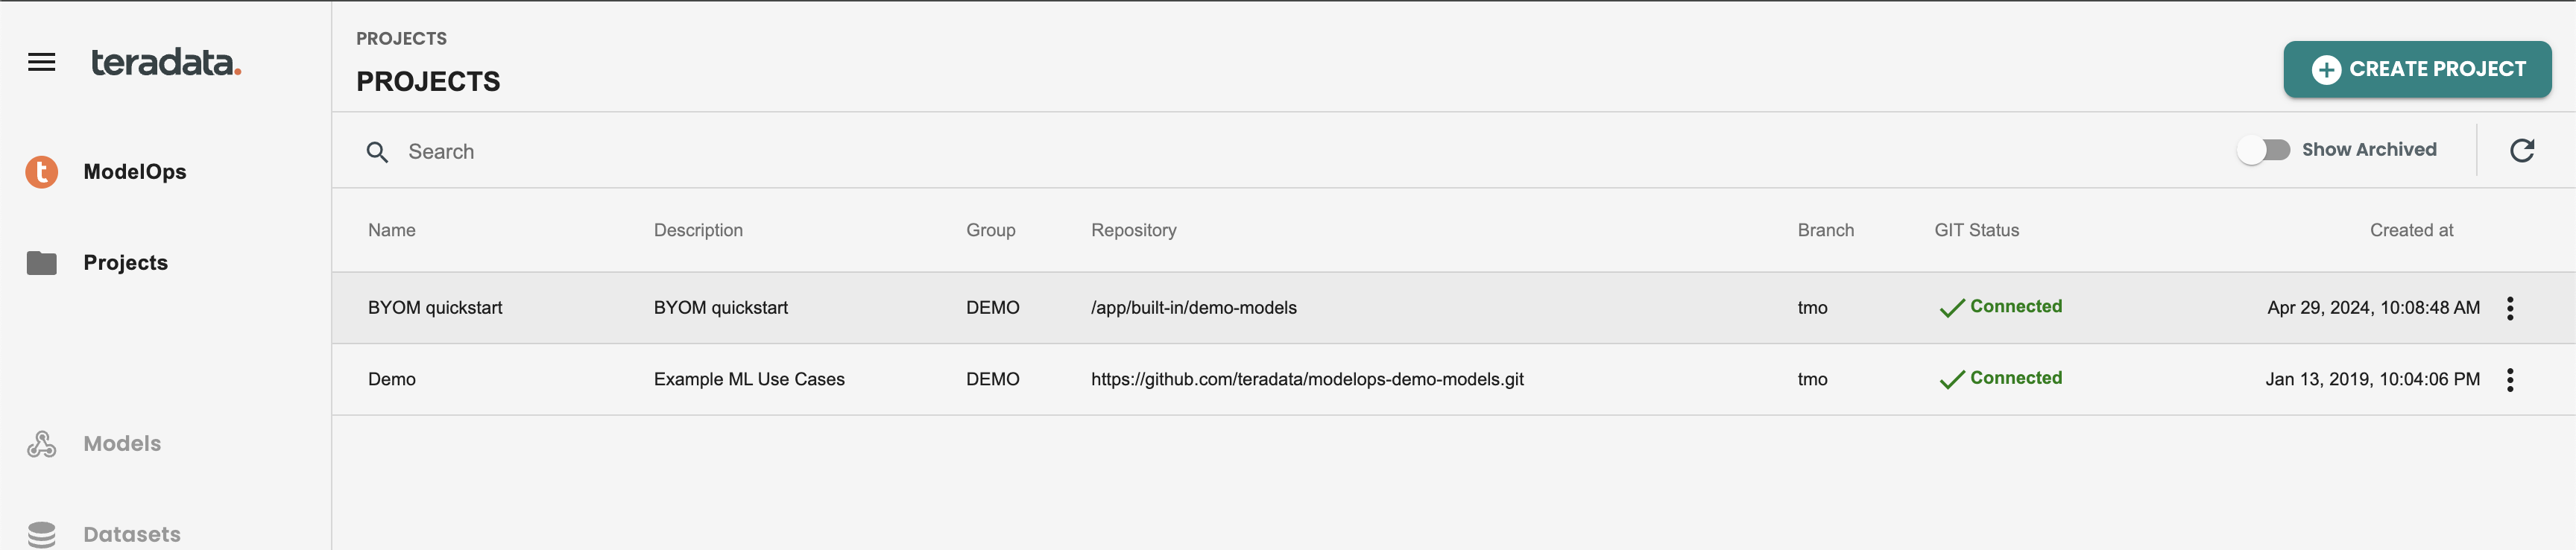 ModelOps projects with quickstart screenshot